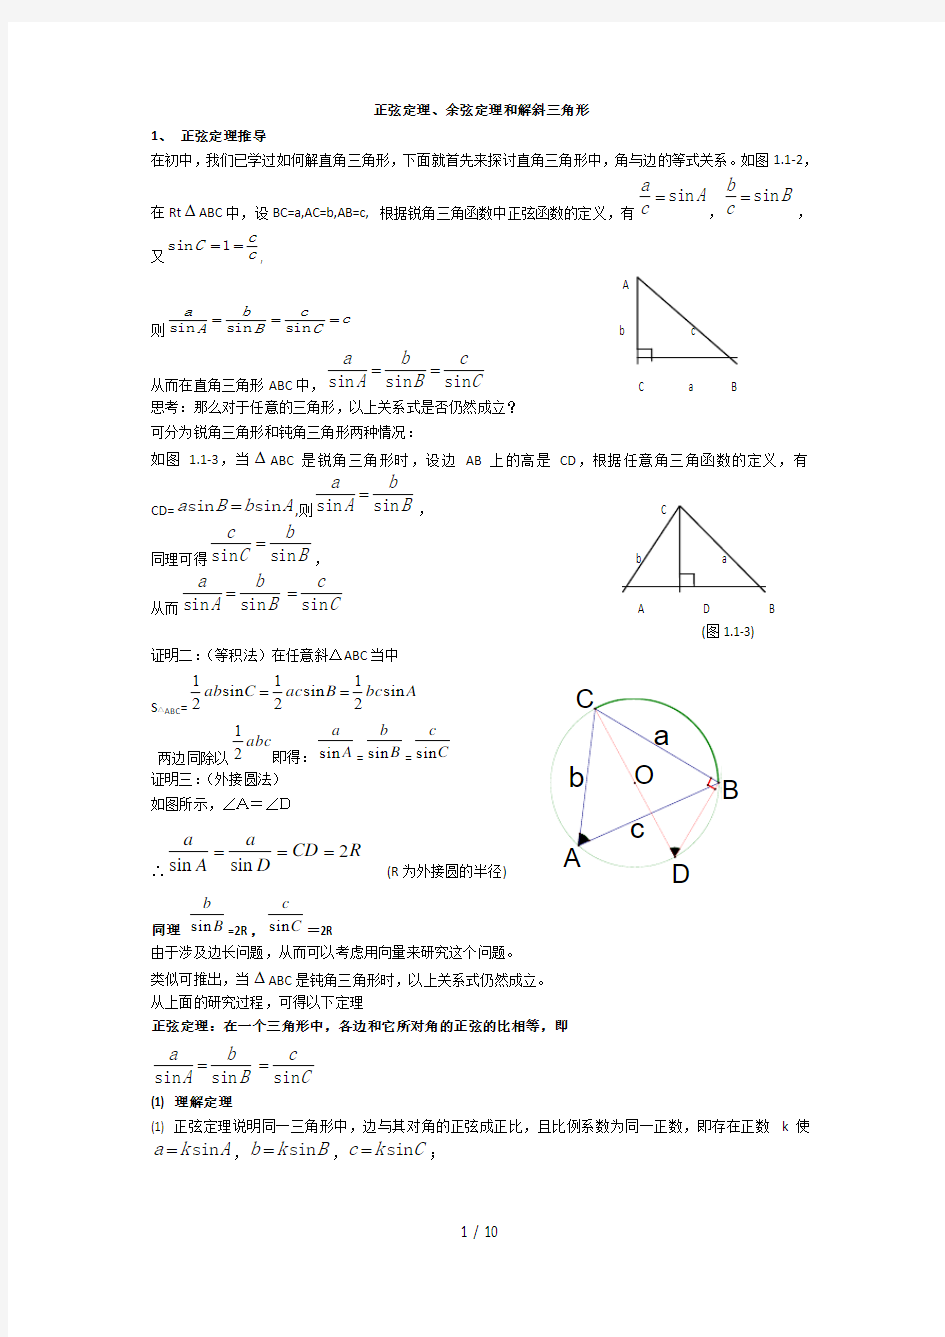 正弦定理余弦定理与解斜三角形